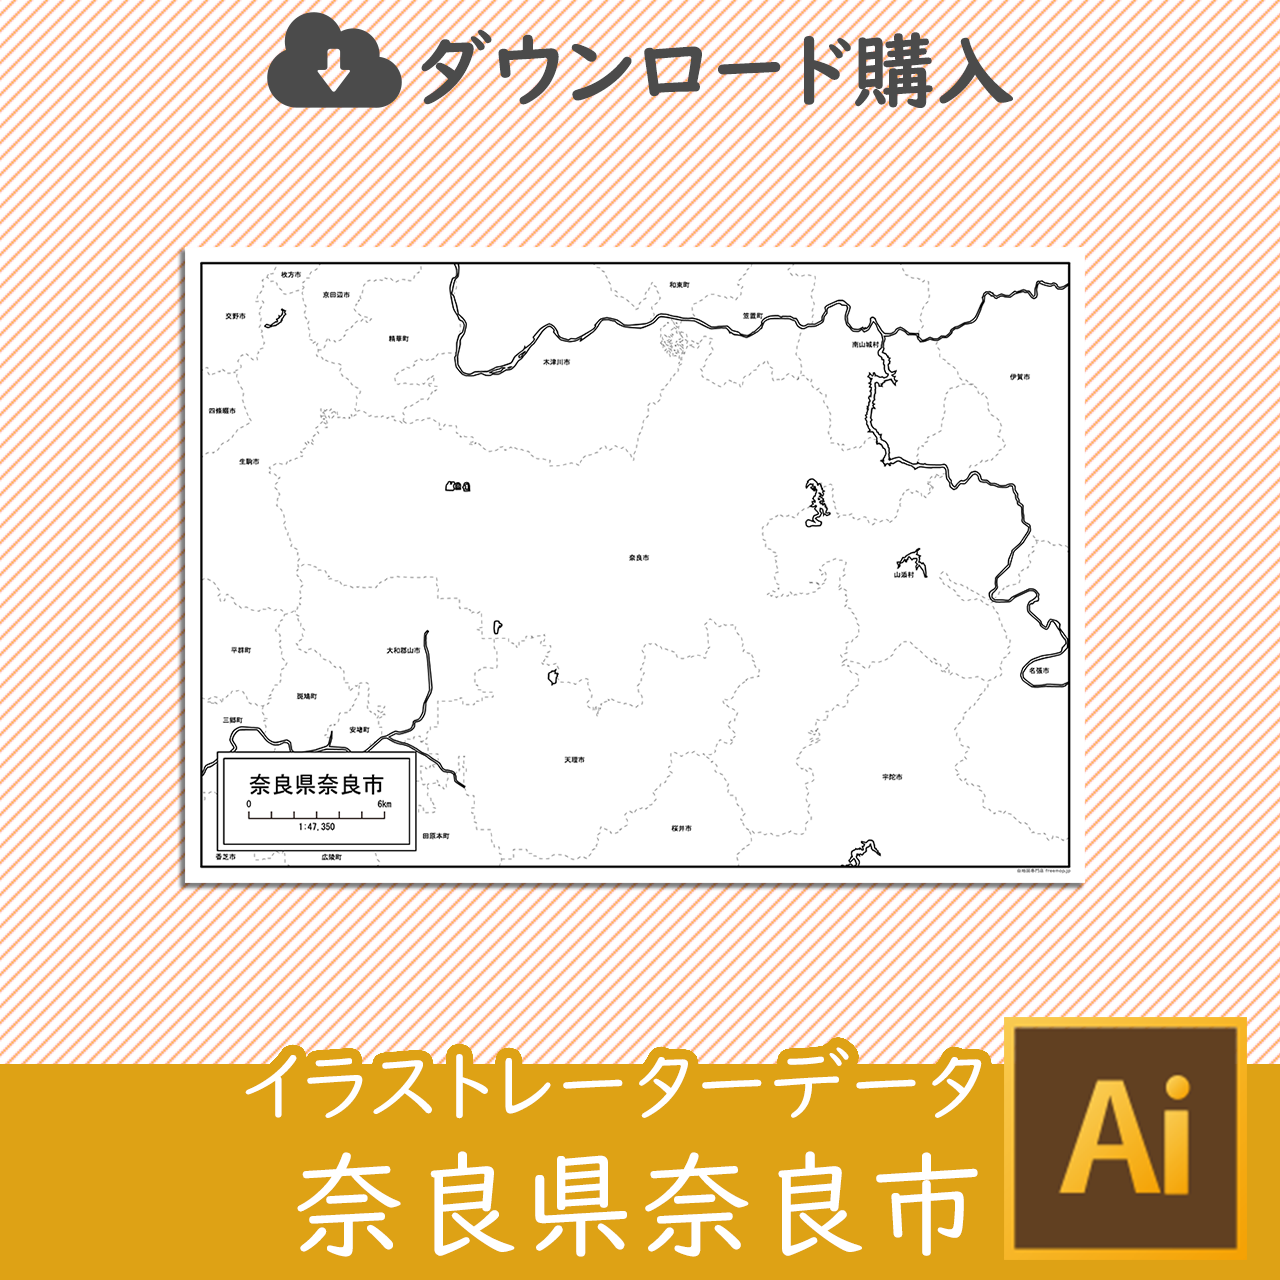 奈良市のサムネイル画像